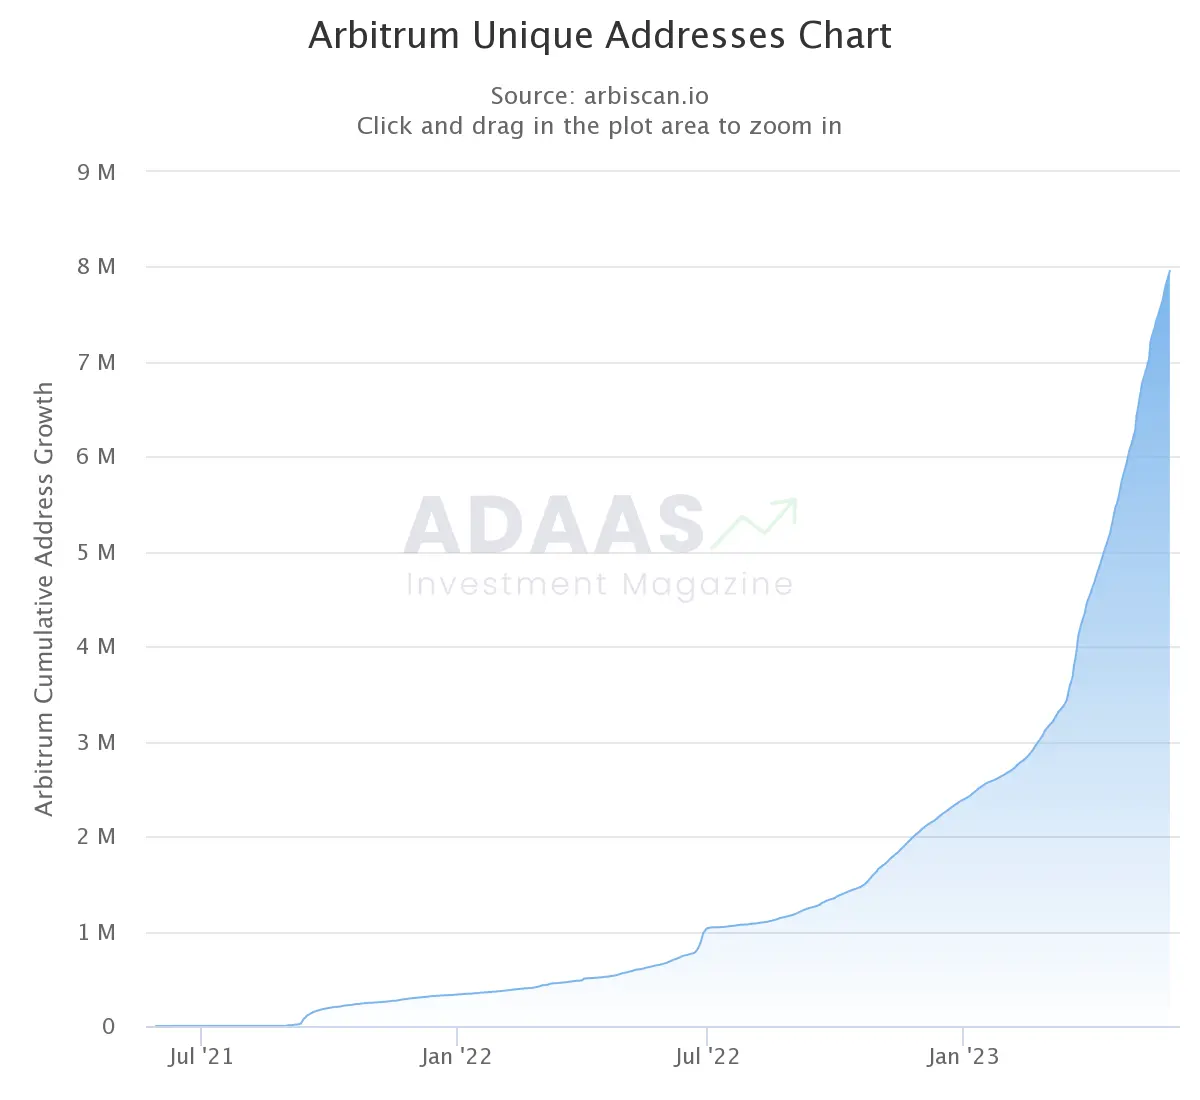 Arbitrum Unique Addresses Chart